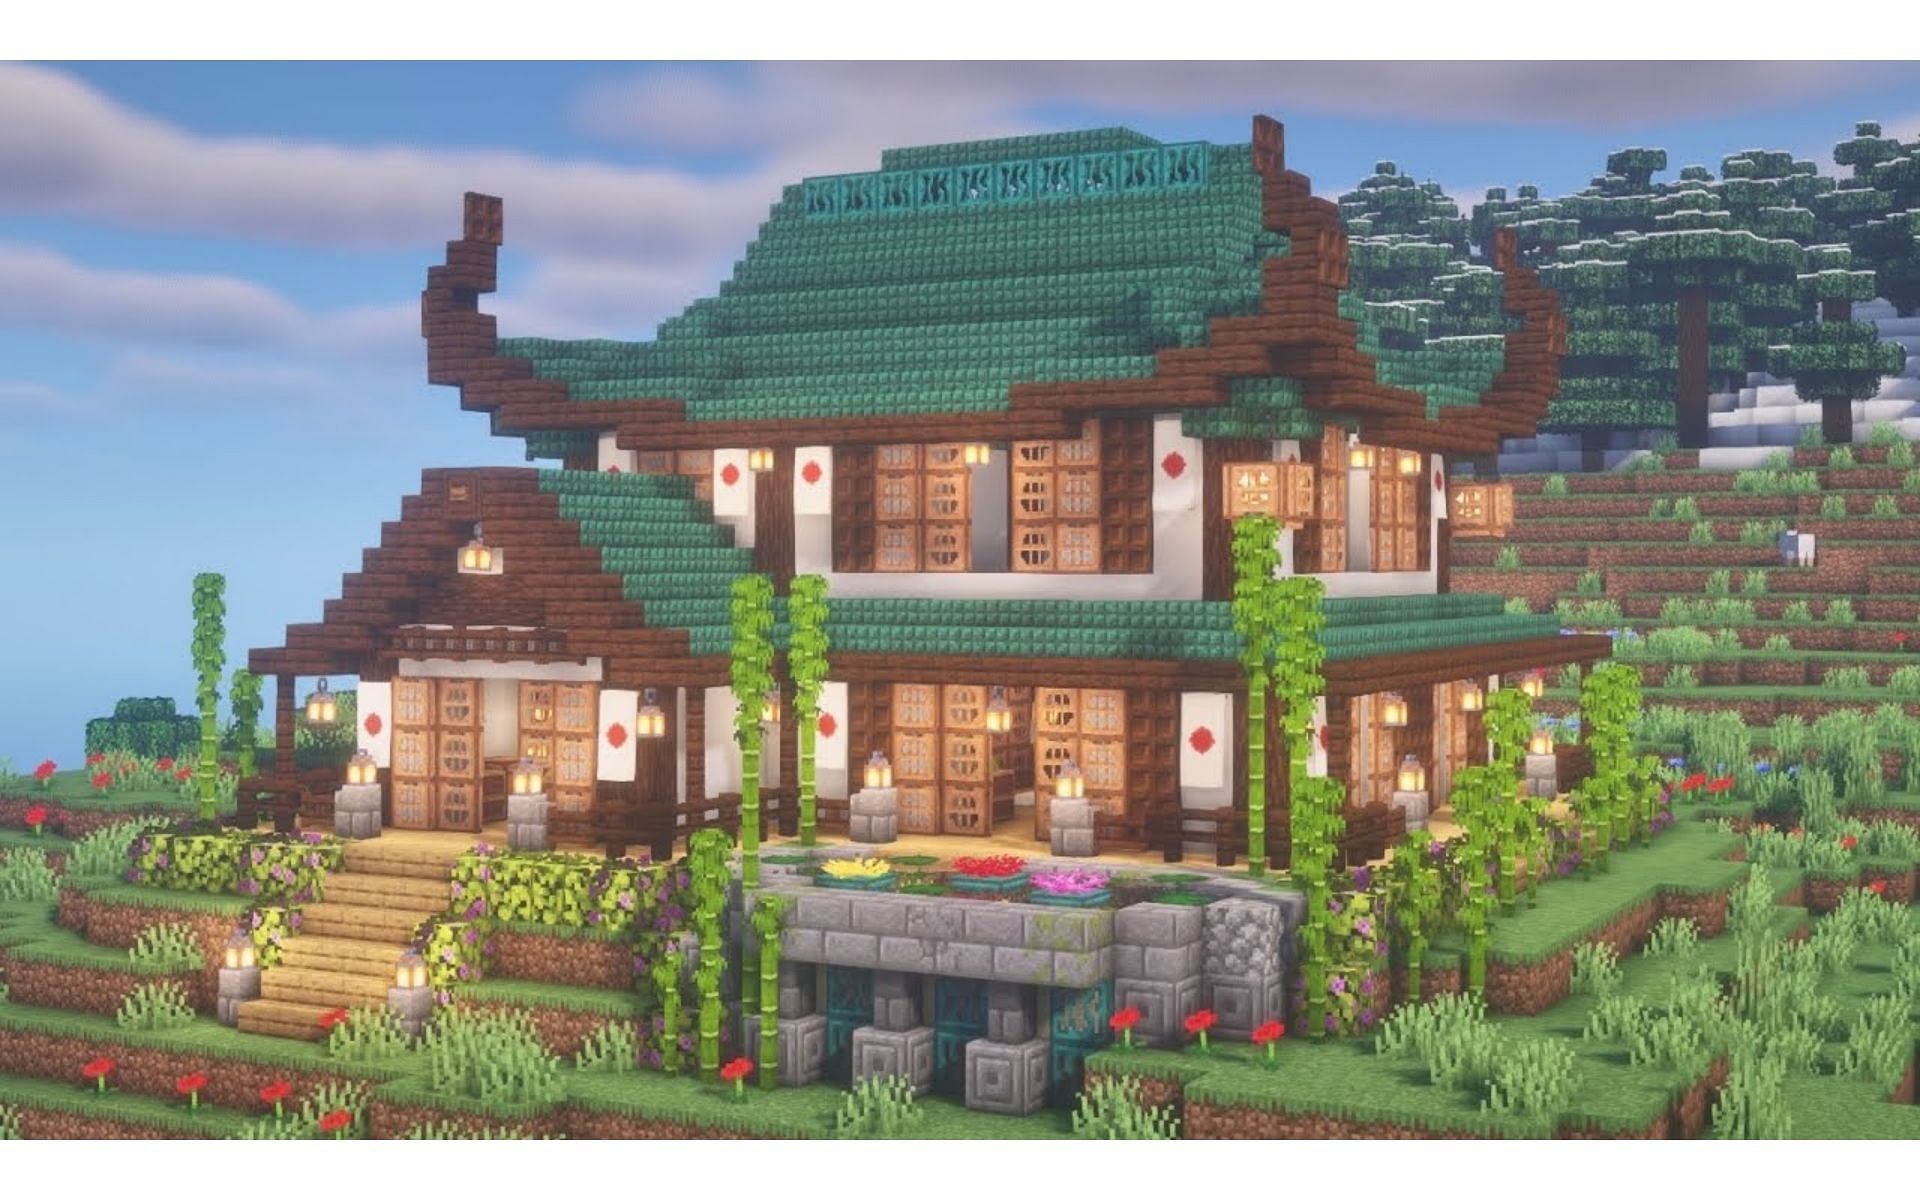 Традиционная японская архитектура действительно выделяется в Minecraft (Изображение взято с YouTube/Tootsie)